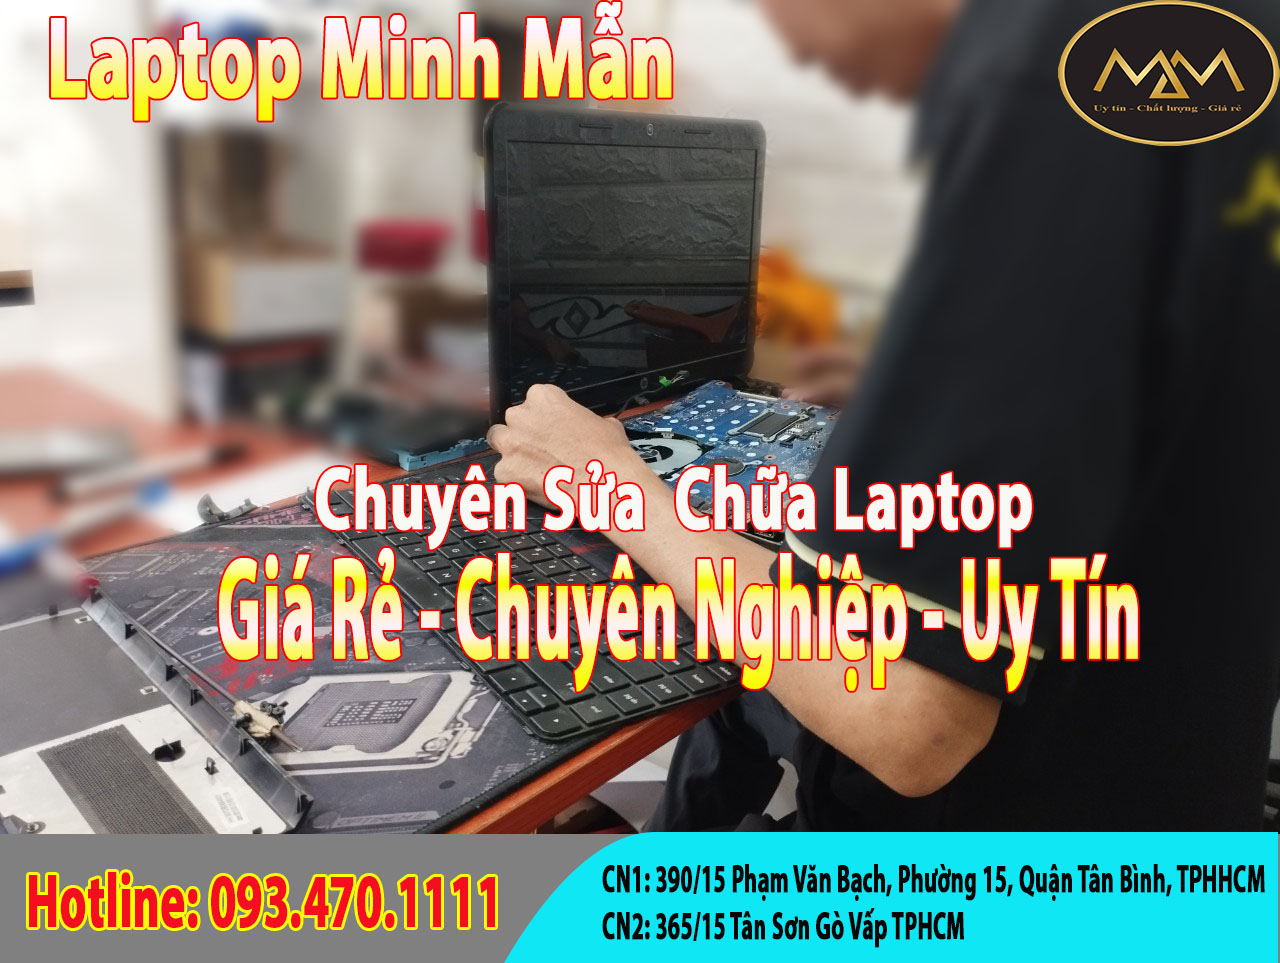 Thay-màn-hình-laptop-thinkpad-giá-rẻ-Tân-Phú